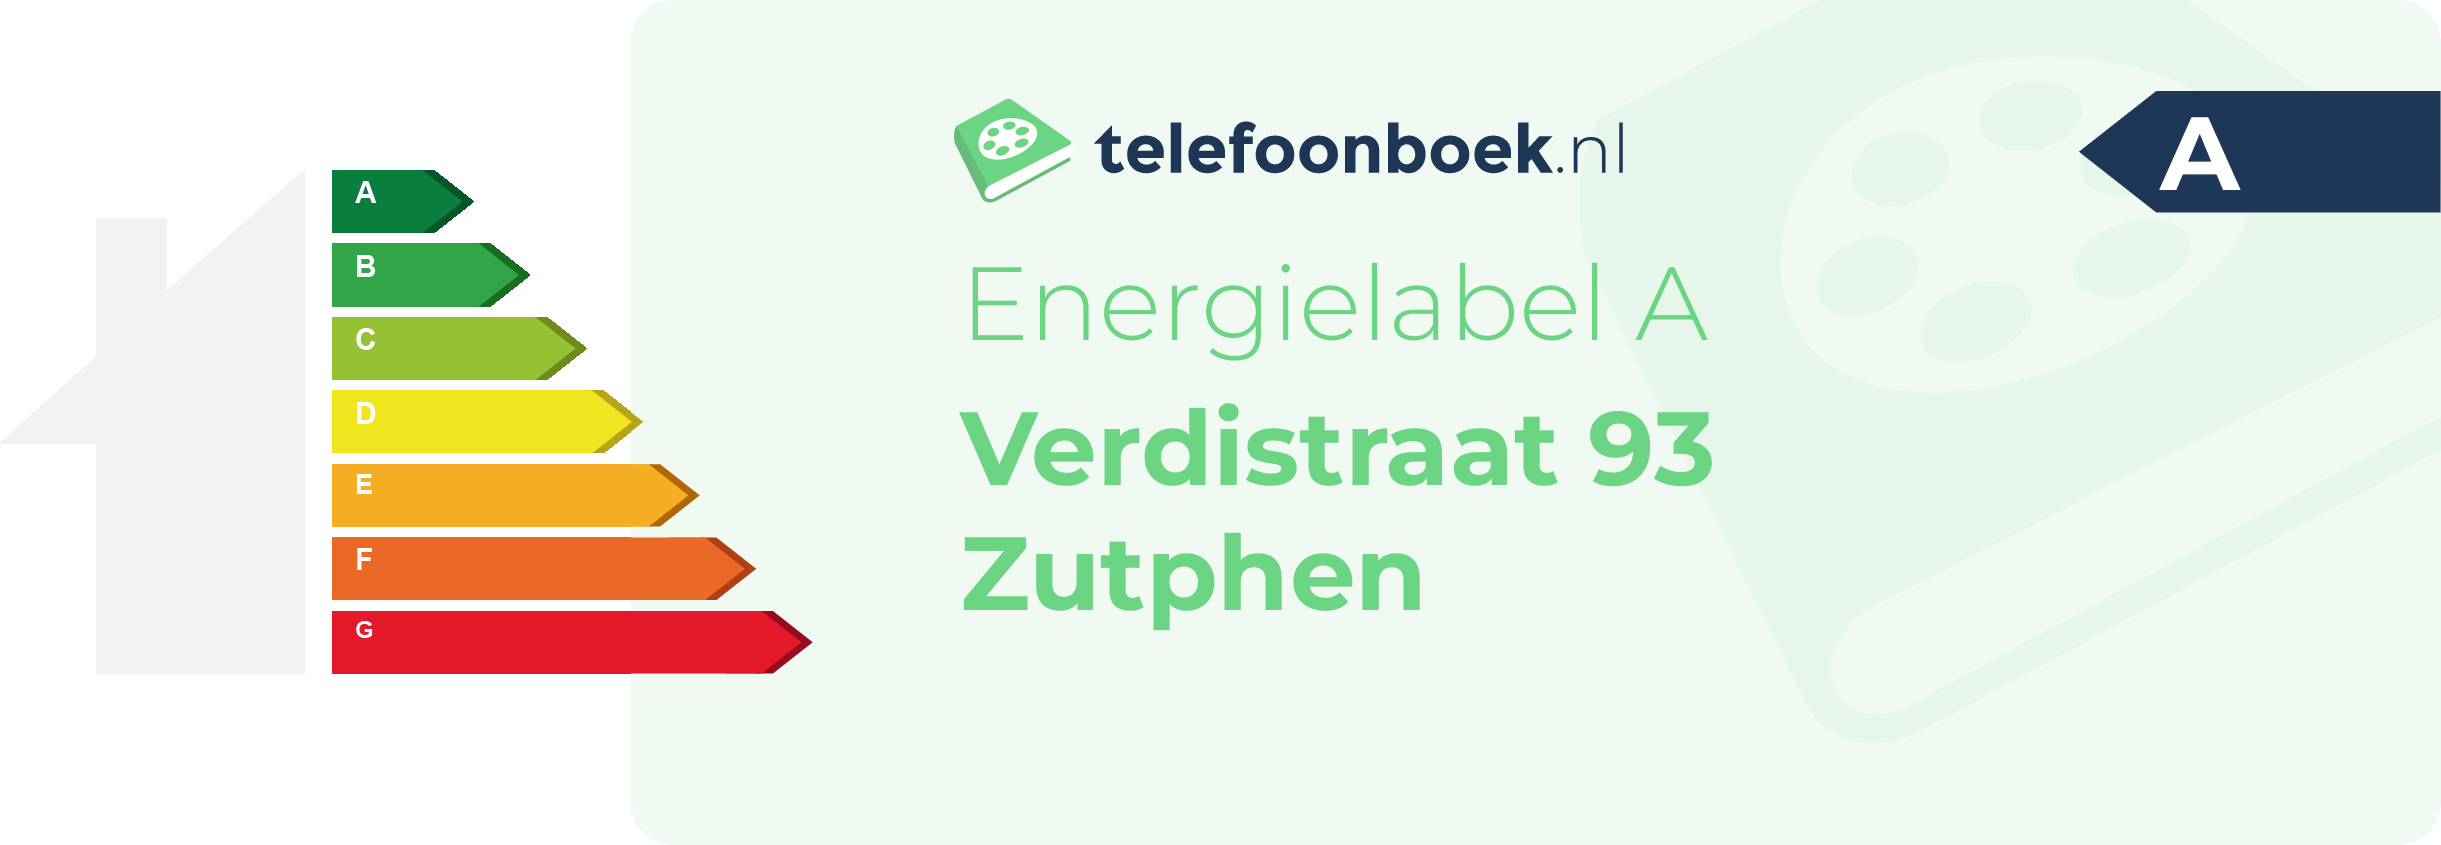 Energielabel Verdistraat 93 Zutphen